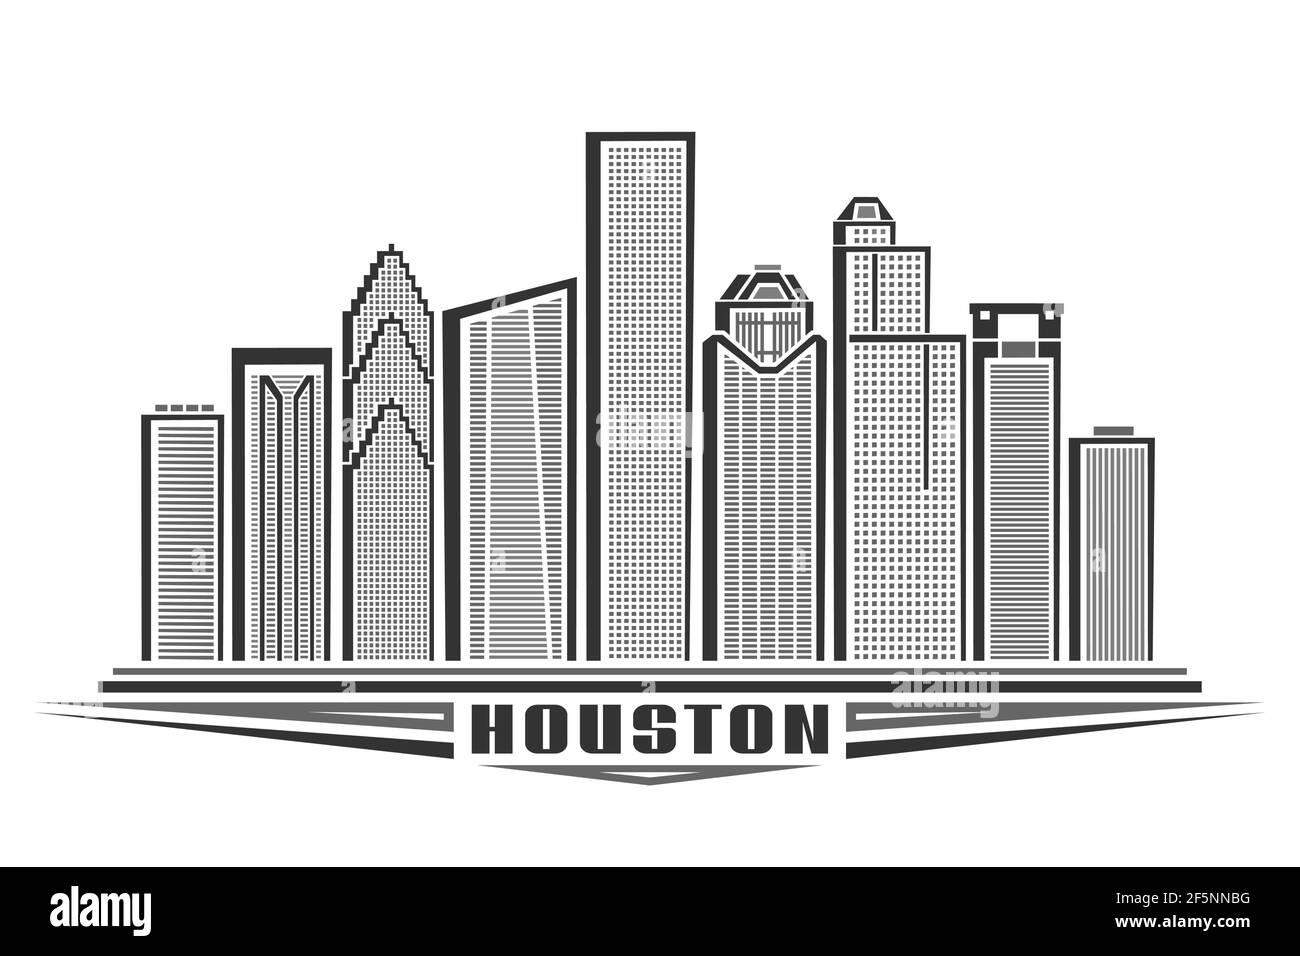 Illustration vectorielle de Houston, affiche horizontale monochrome avec un dessin de la ville de houston, concept d'art urbain avec décoration unique Illustration de Vecteur